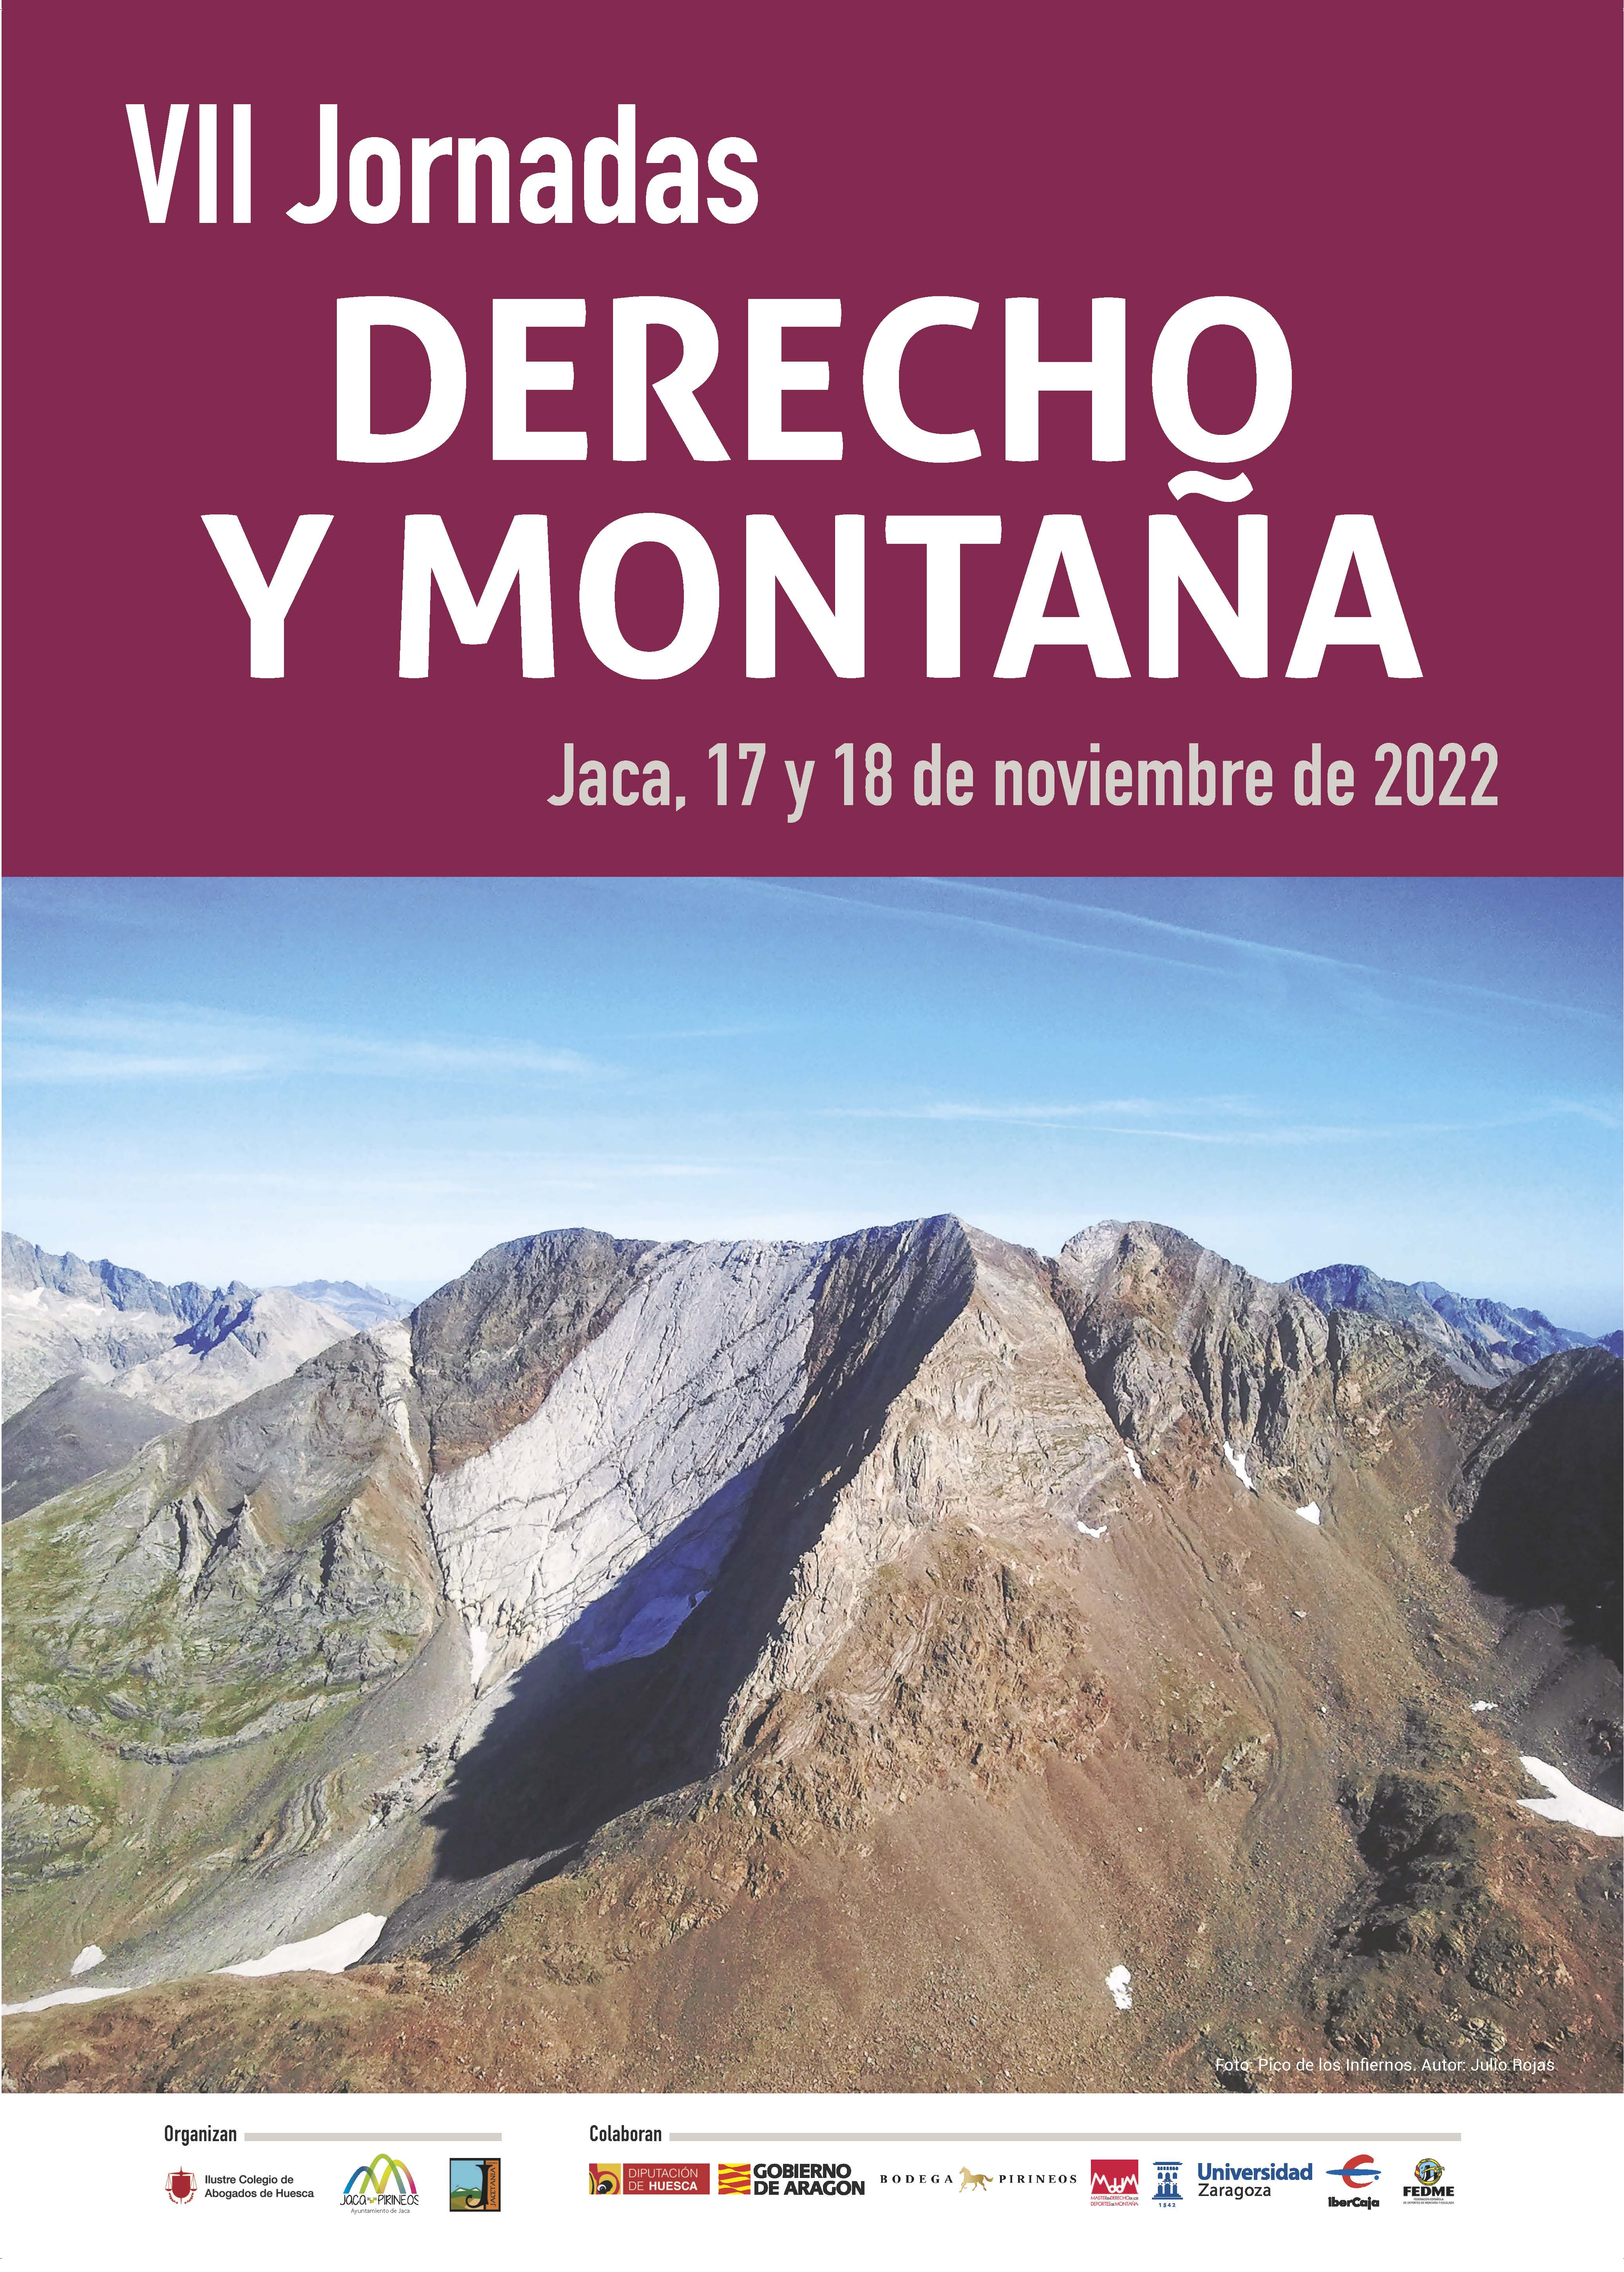 Las VII Jornadas Derecho y Montaña analizarán el cambio climático y su influencia en la montaña